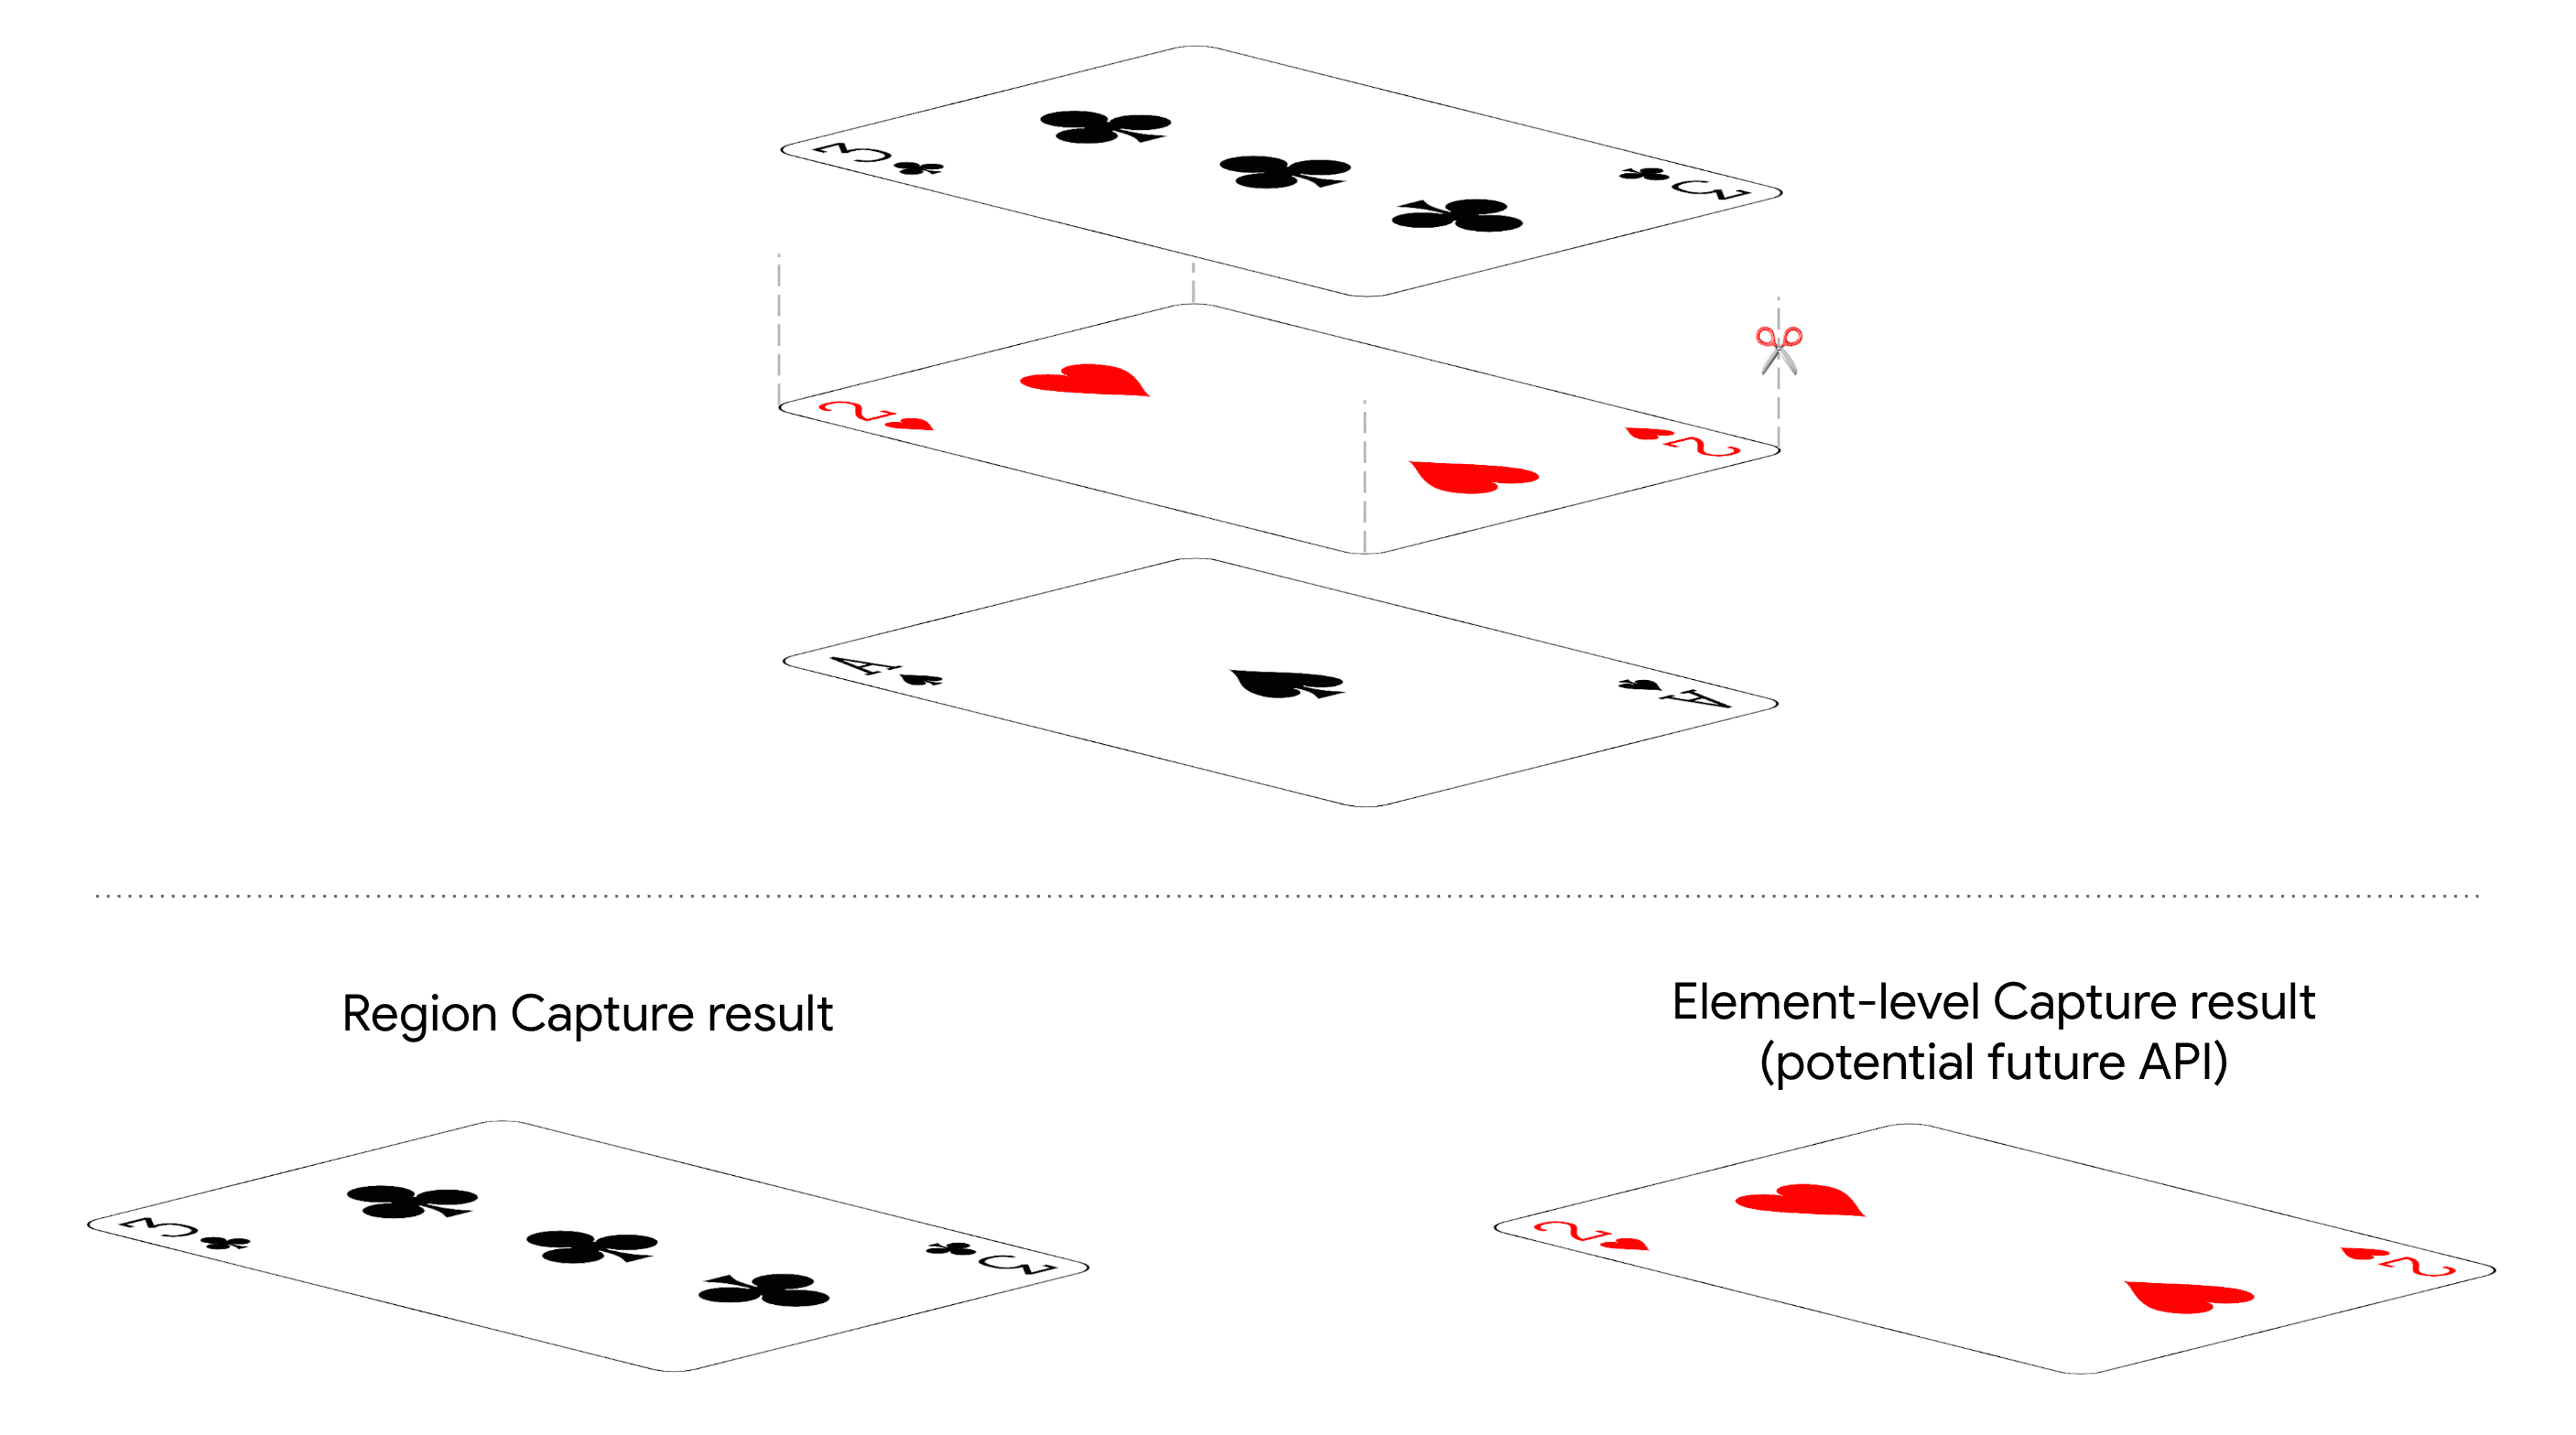 Immagine dei diversi risultati per Region Capture e Element-level Capture.